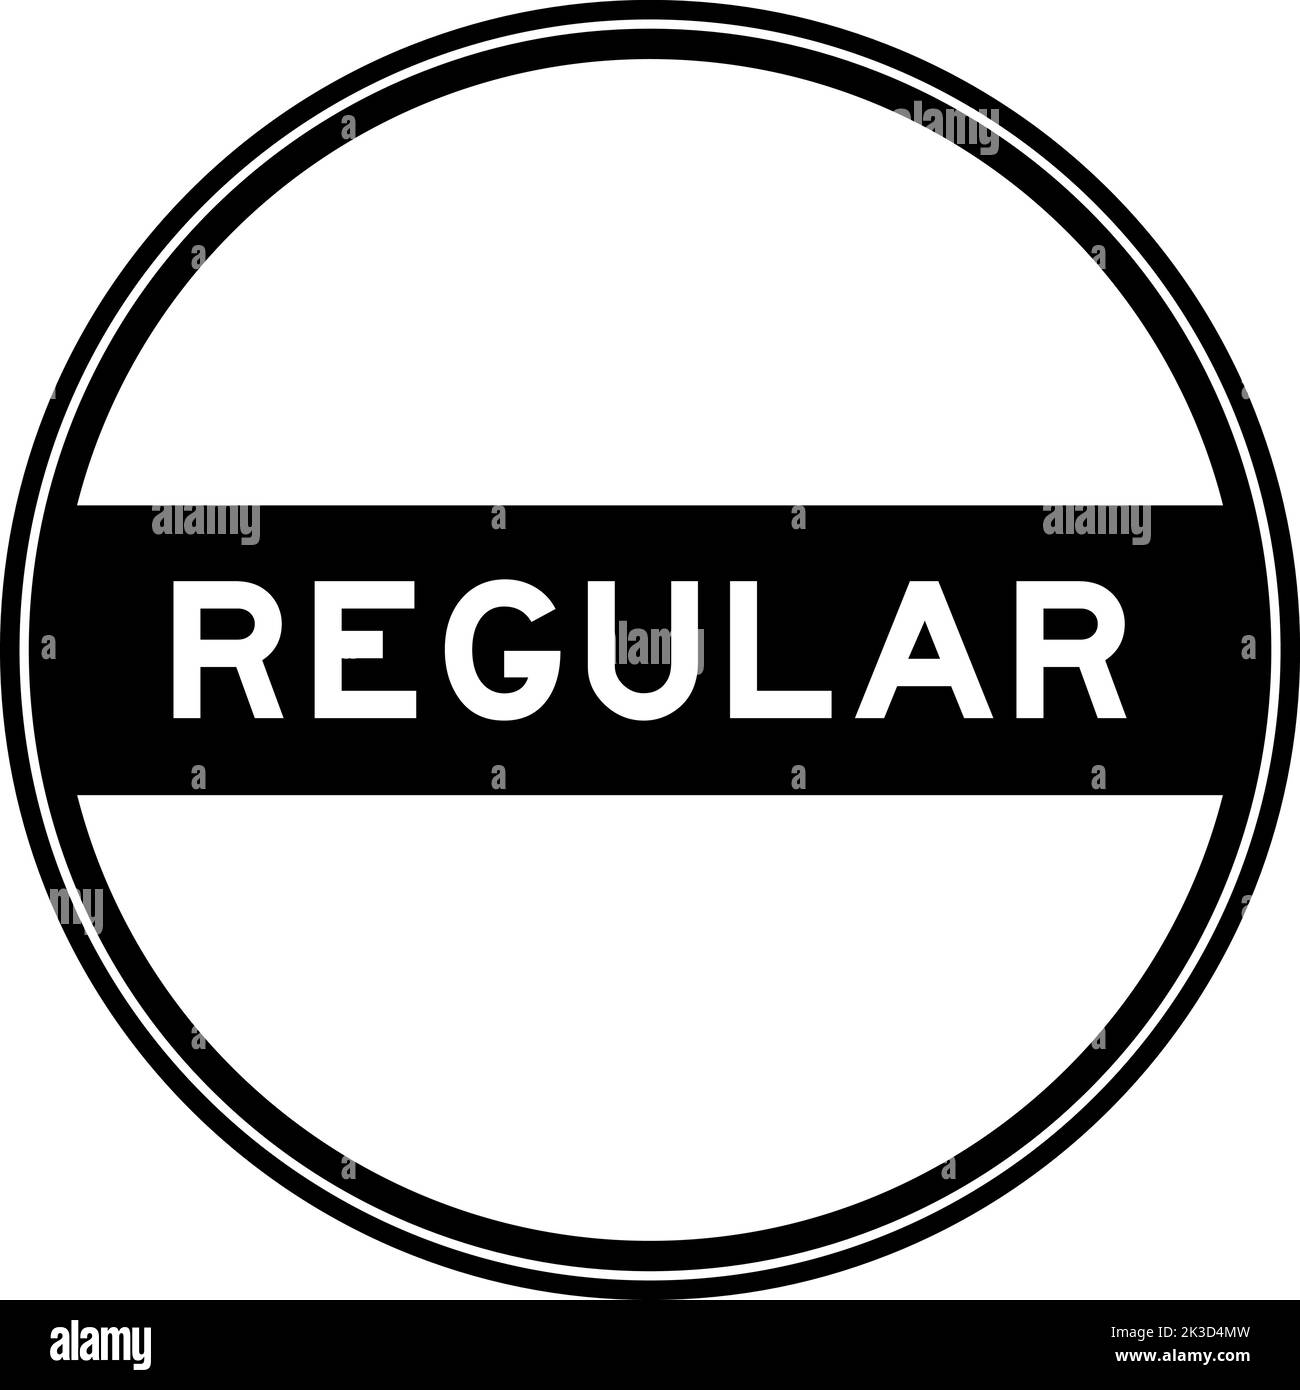 Autocollant de couleur noire à joint rond en mot régulier sur fond blanc Illustration de Vecteur